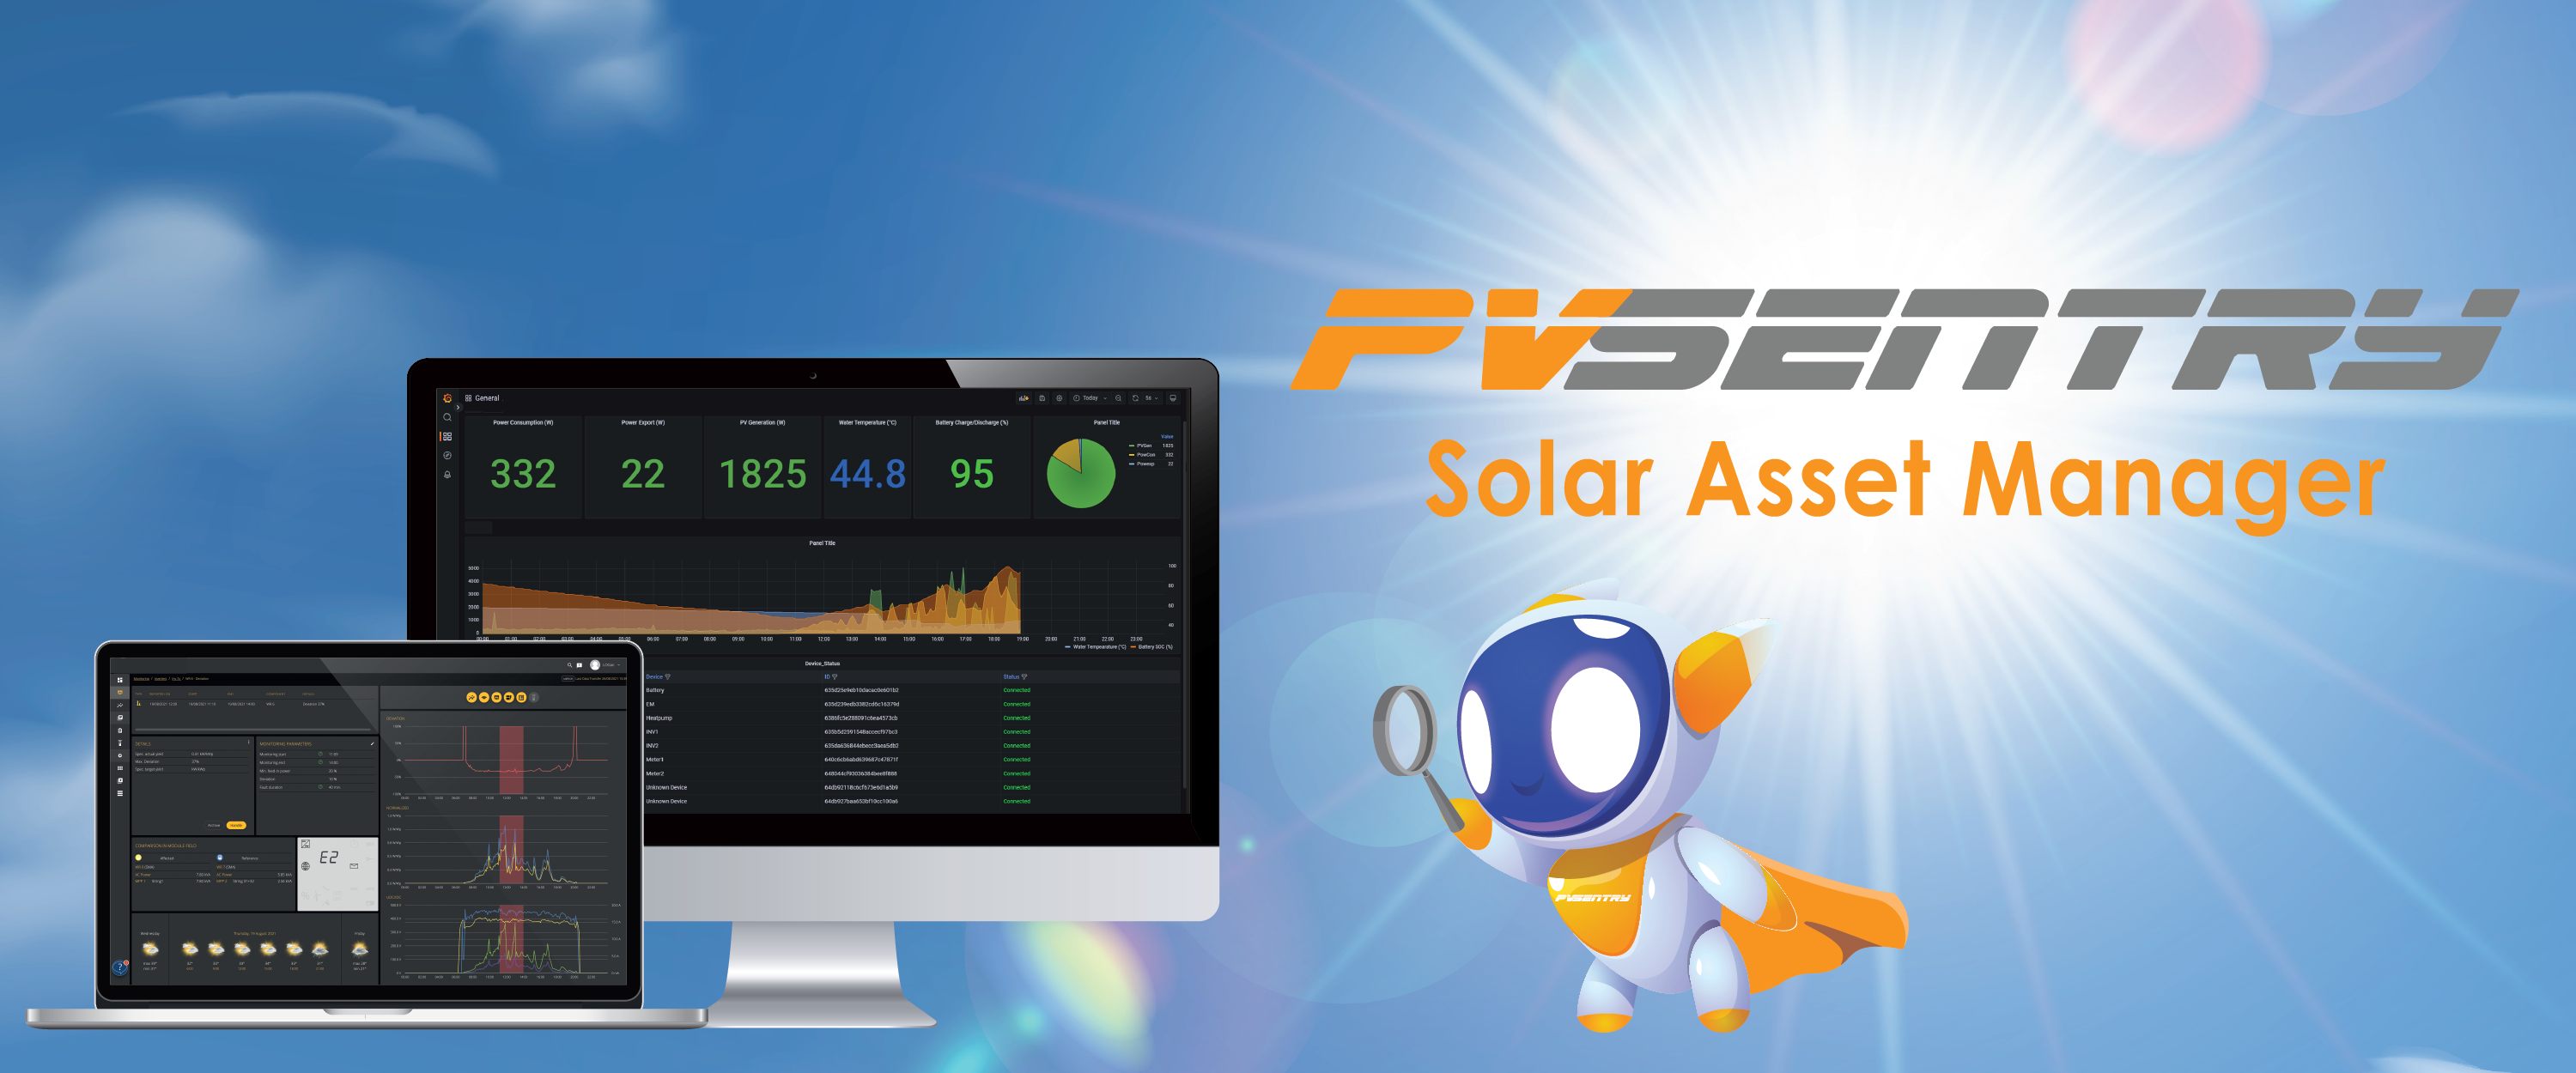 pvsentry solar asset manager